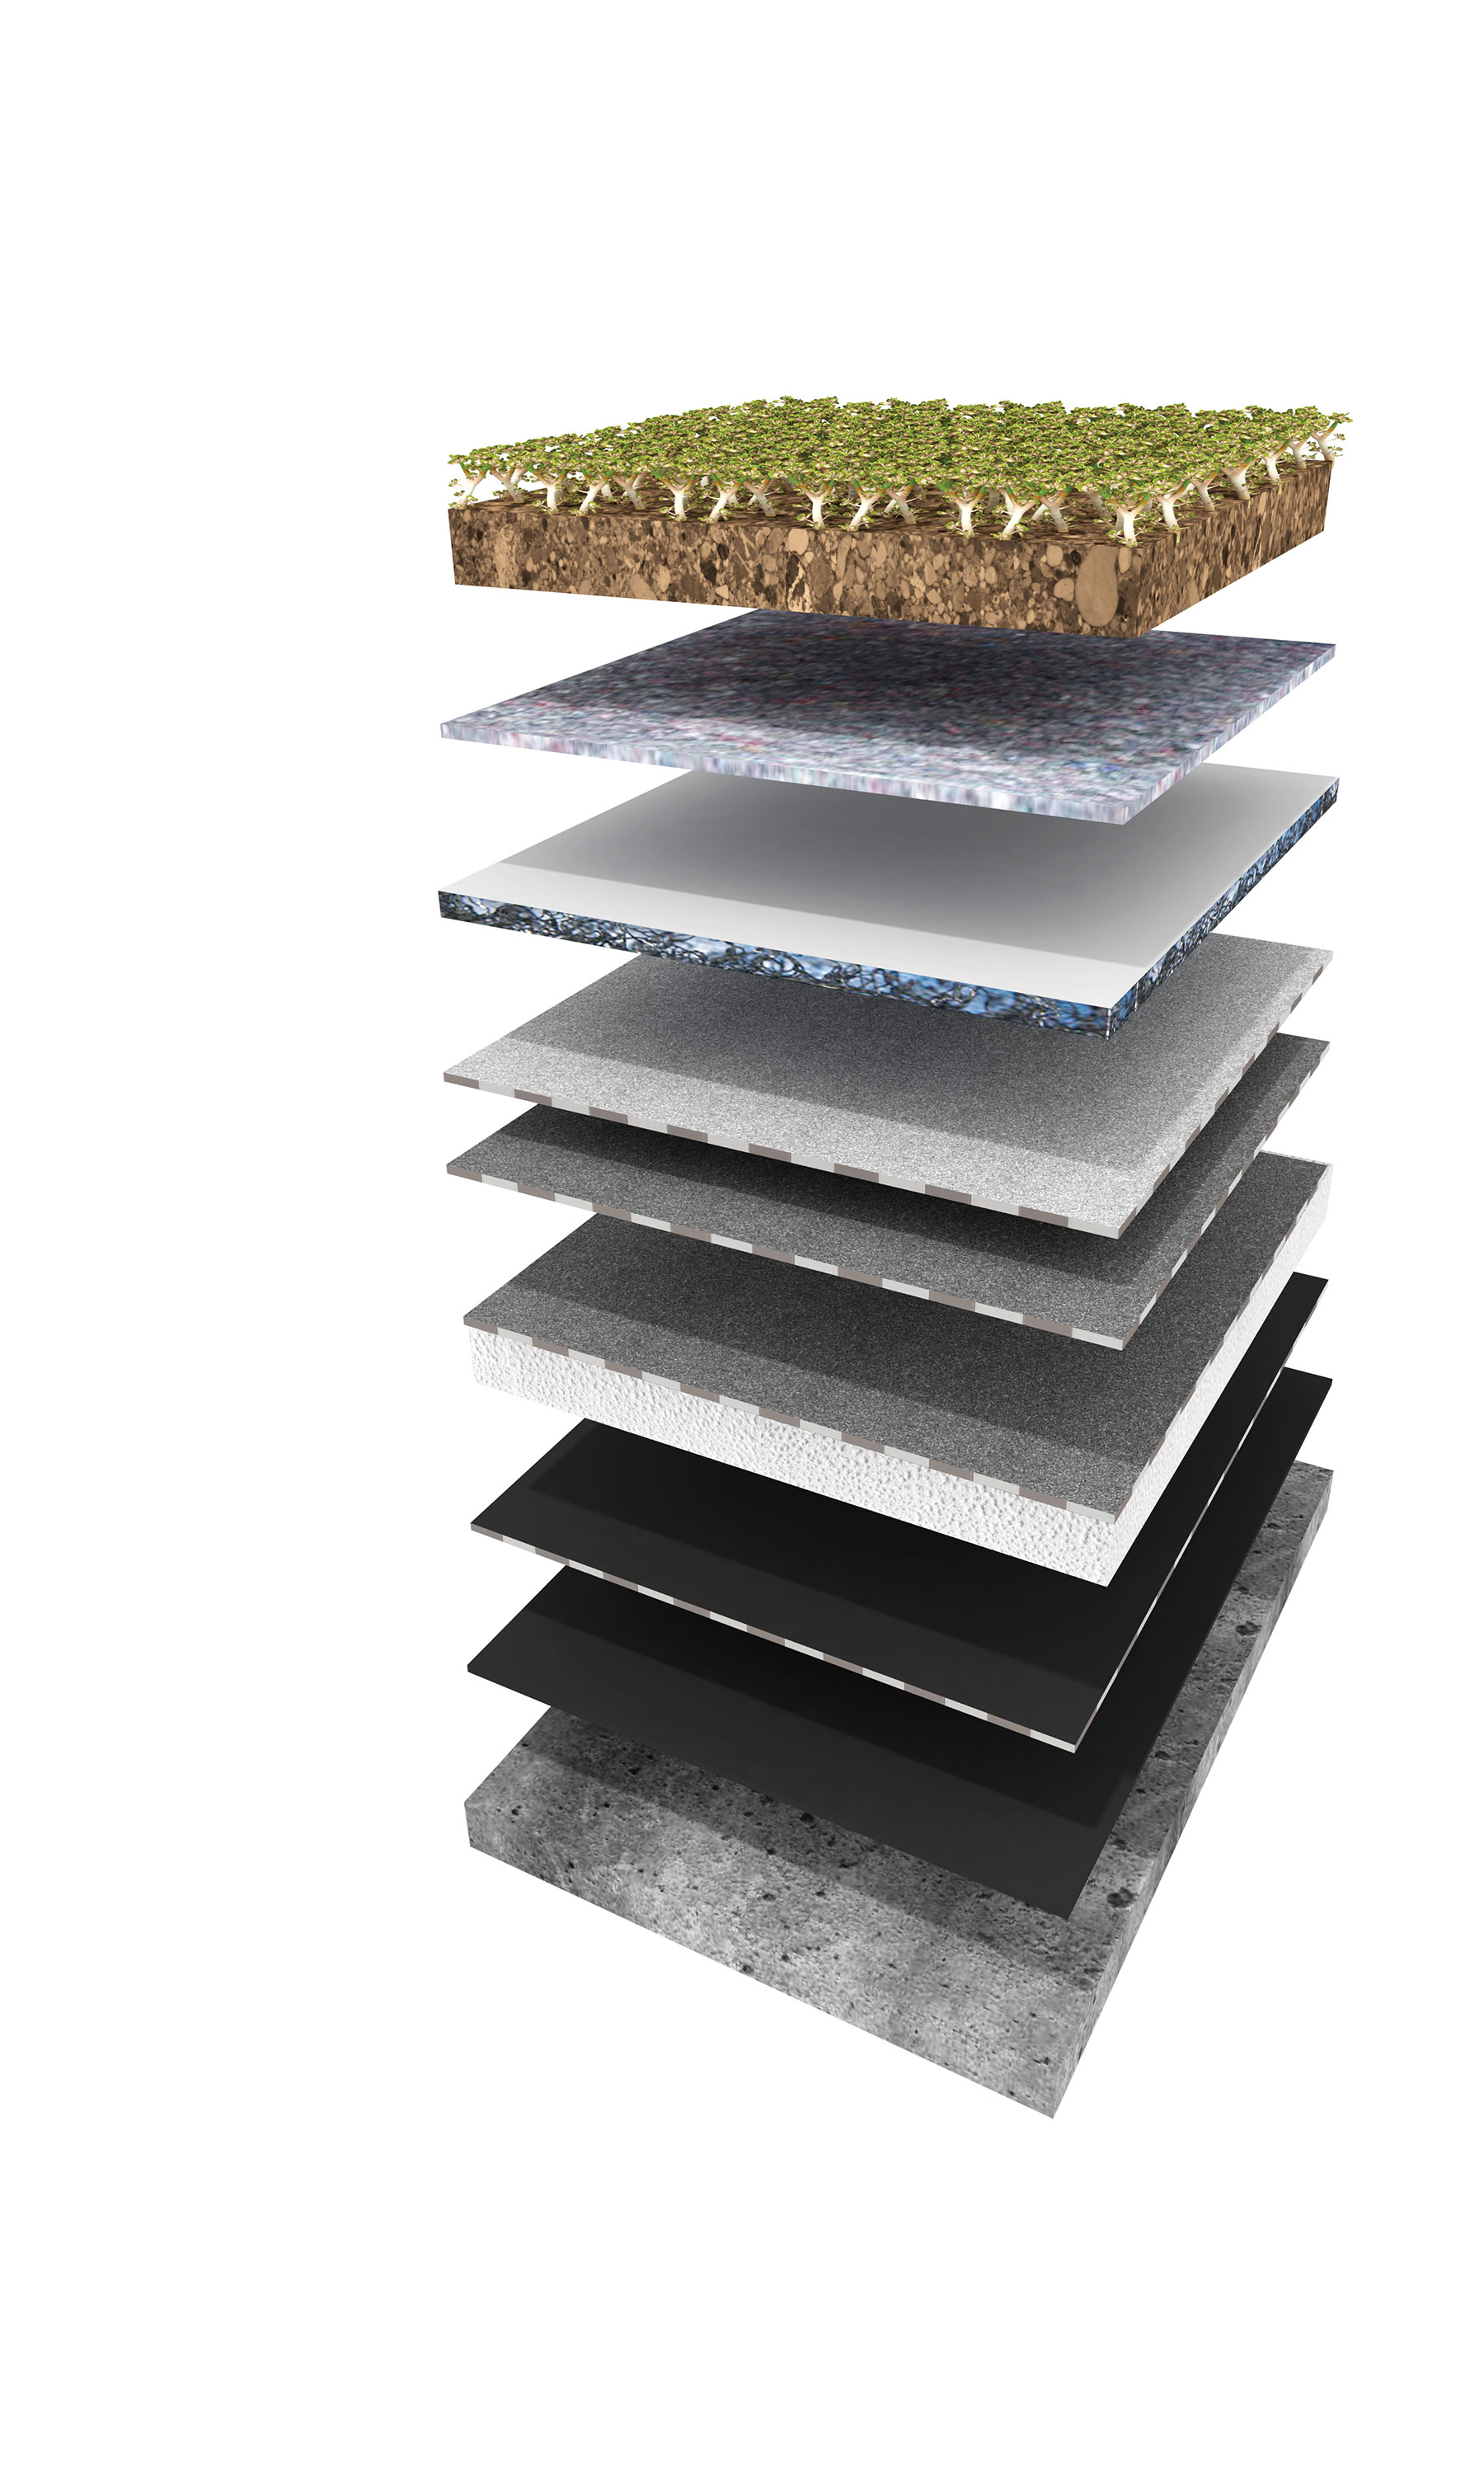 Skladba strešného plášťa Urbanscape s parozábranou (foto: Kanuf Insulation): 1 – vegetačná vrstva z rozličných druhov rozchodníka 2 – substrát z minerálnej vlny 3 – odvodňovací systém Urbanscape 4 – koreňová membrána 5 – hydroizolácia 6 – tepelná izolácia z minerálnej vlny 7 – parozábrana 8 – nosná konštrukcia strechy